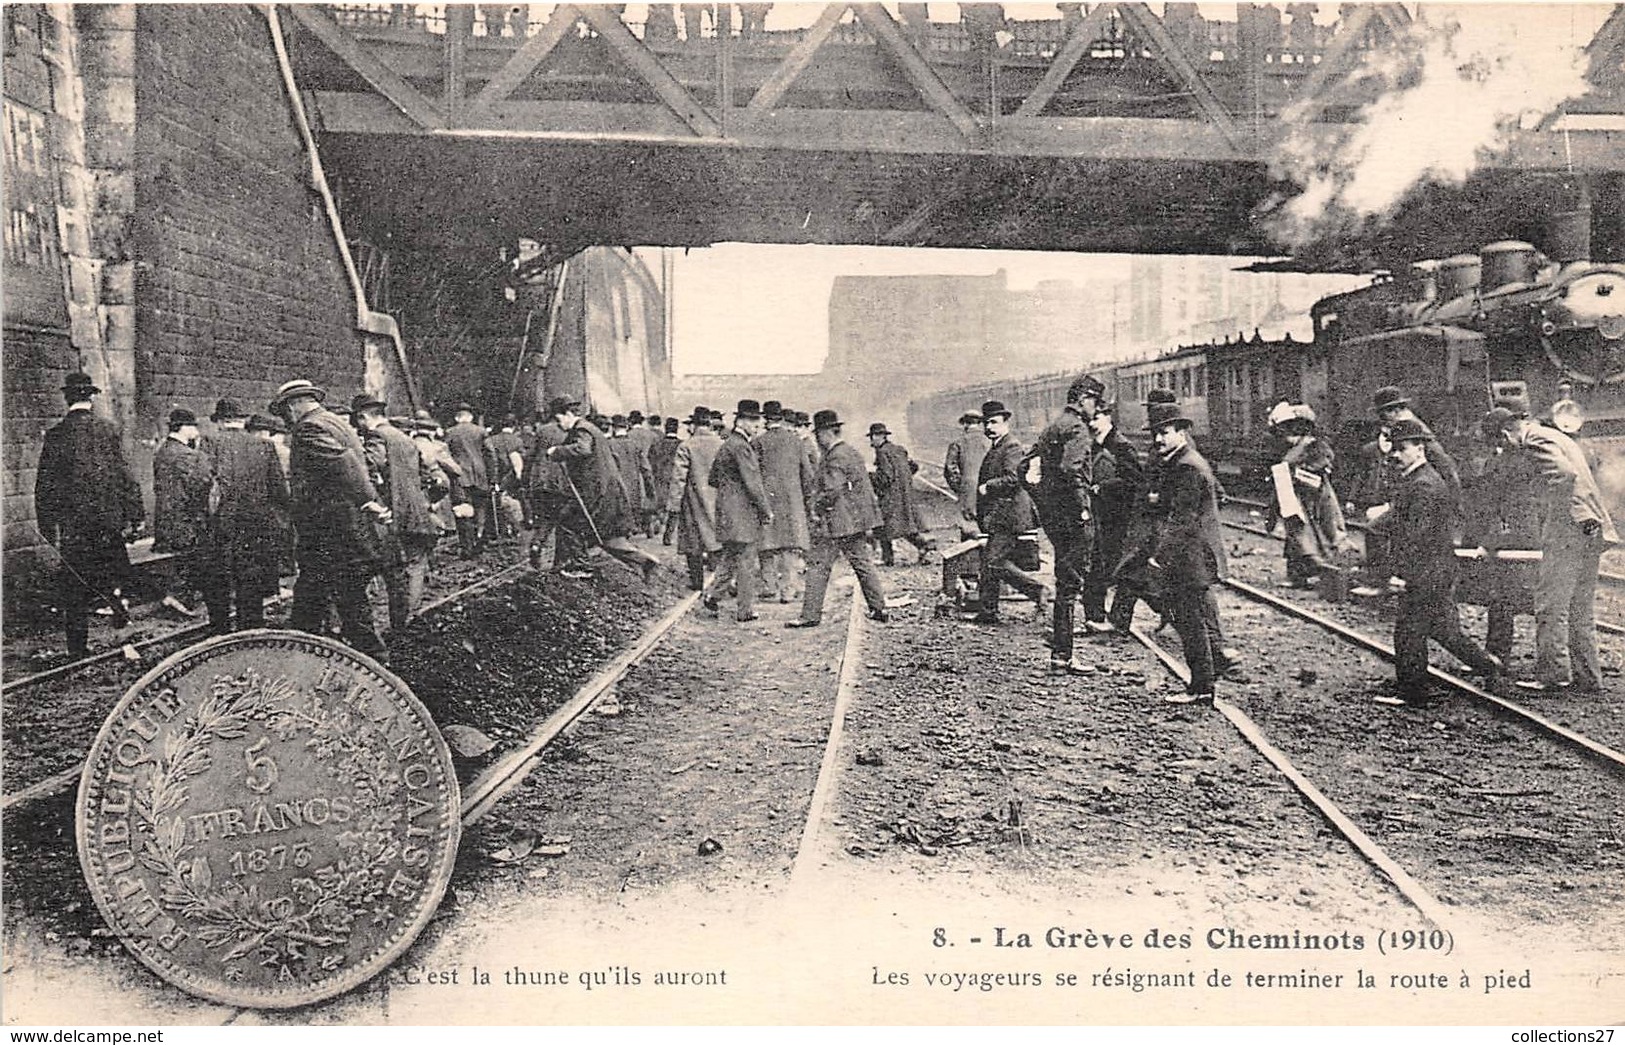 GREVE DES CHEMINOTS DU NORD 1910, LES VOYAGEURS SE RESIGNANT DE TERMINER LA ROUTE A PIED - Métro Parisien, Gares